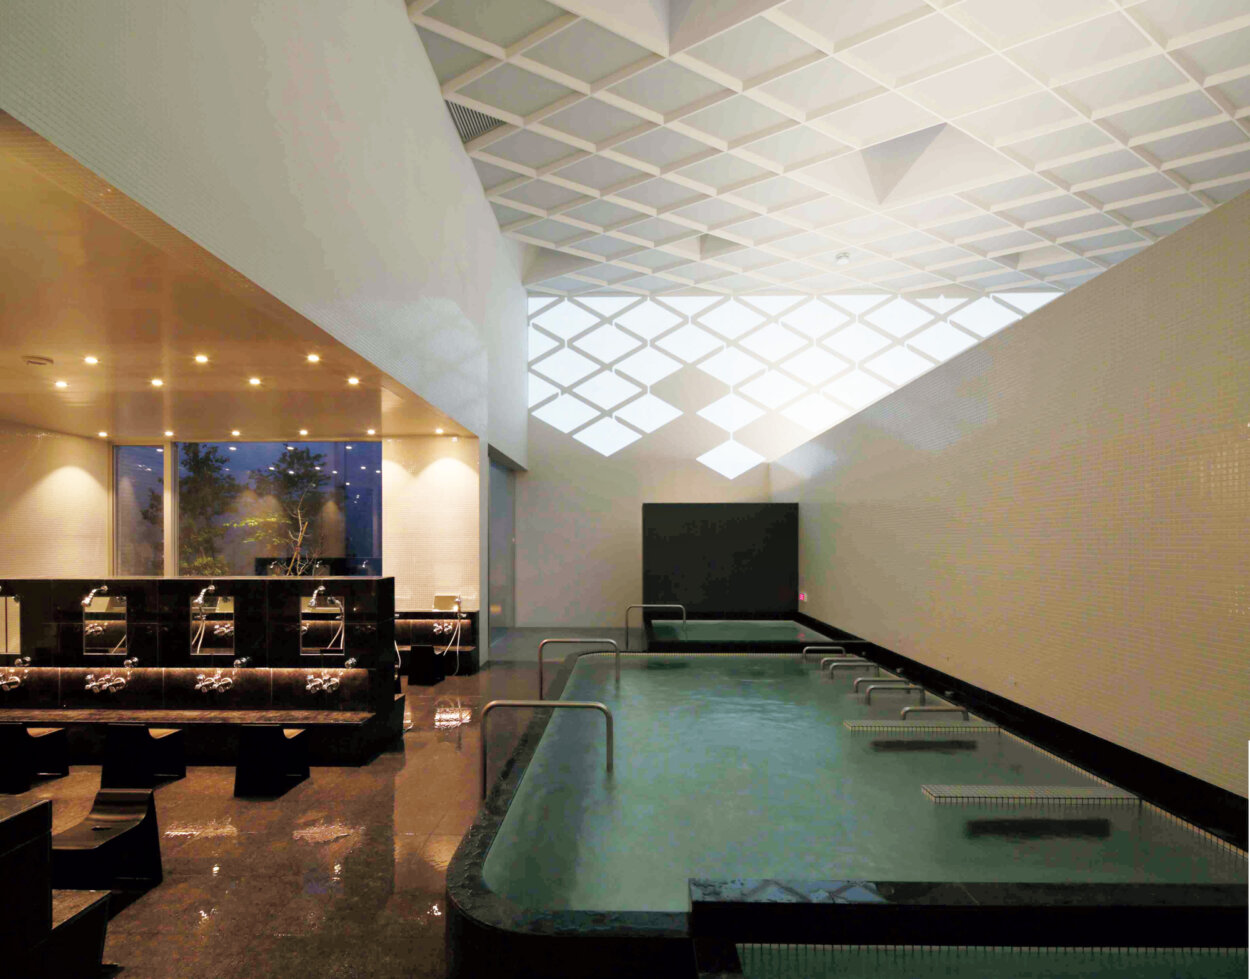 東京・桜台の『久松湯』。浴場では、日没から閉店までの間に光の演出が数回ある。時間は日によって変わる。パターンは4種類